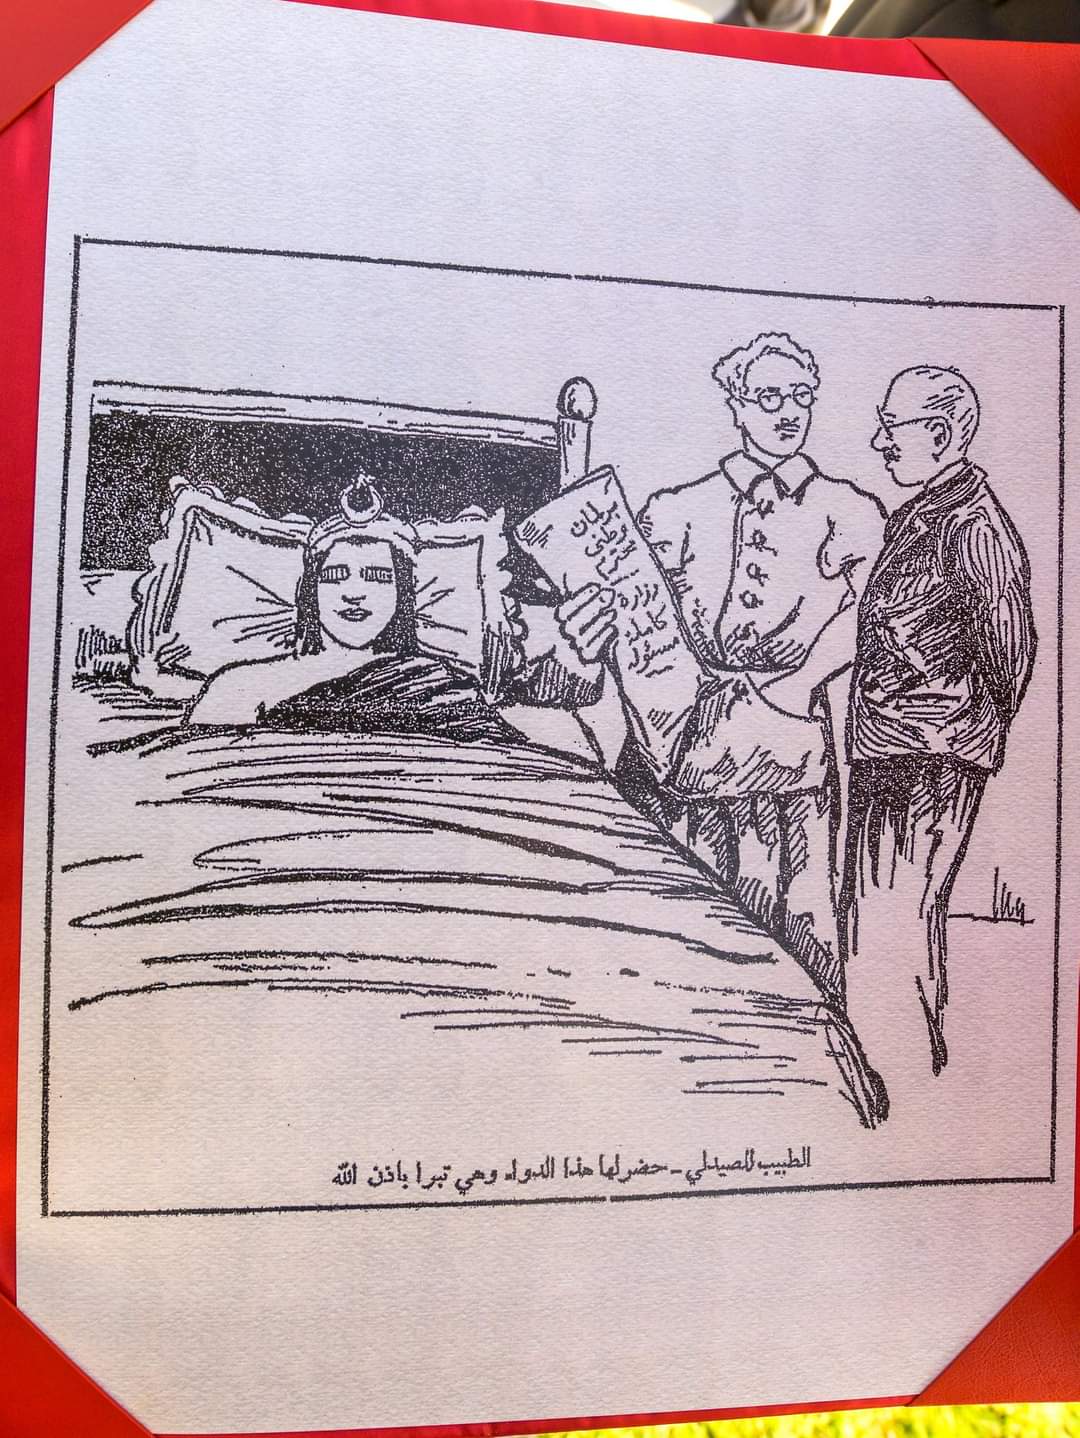 سعيد يطلع الغنوشي والمشيشي على كاريكاتور يتضمن " برلمان وطني محترم" 